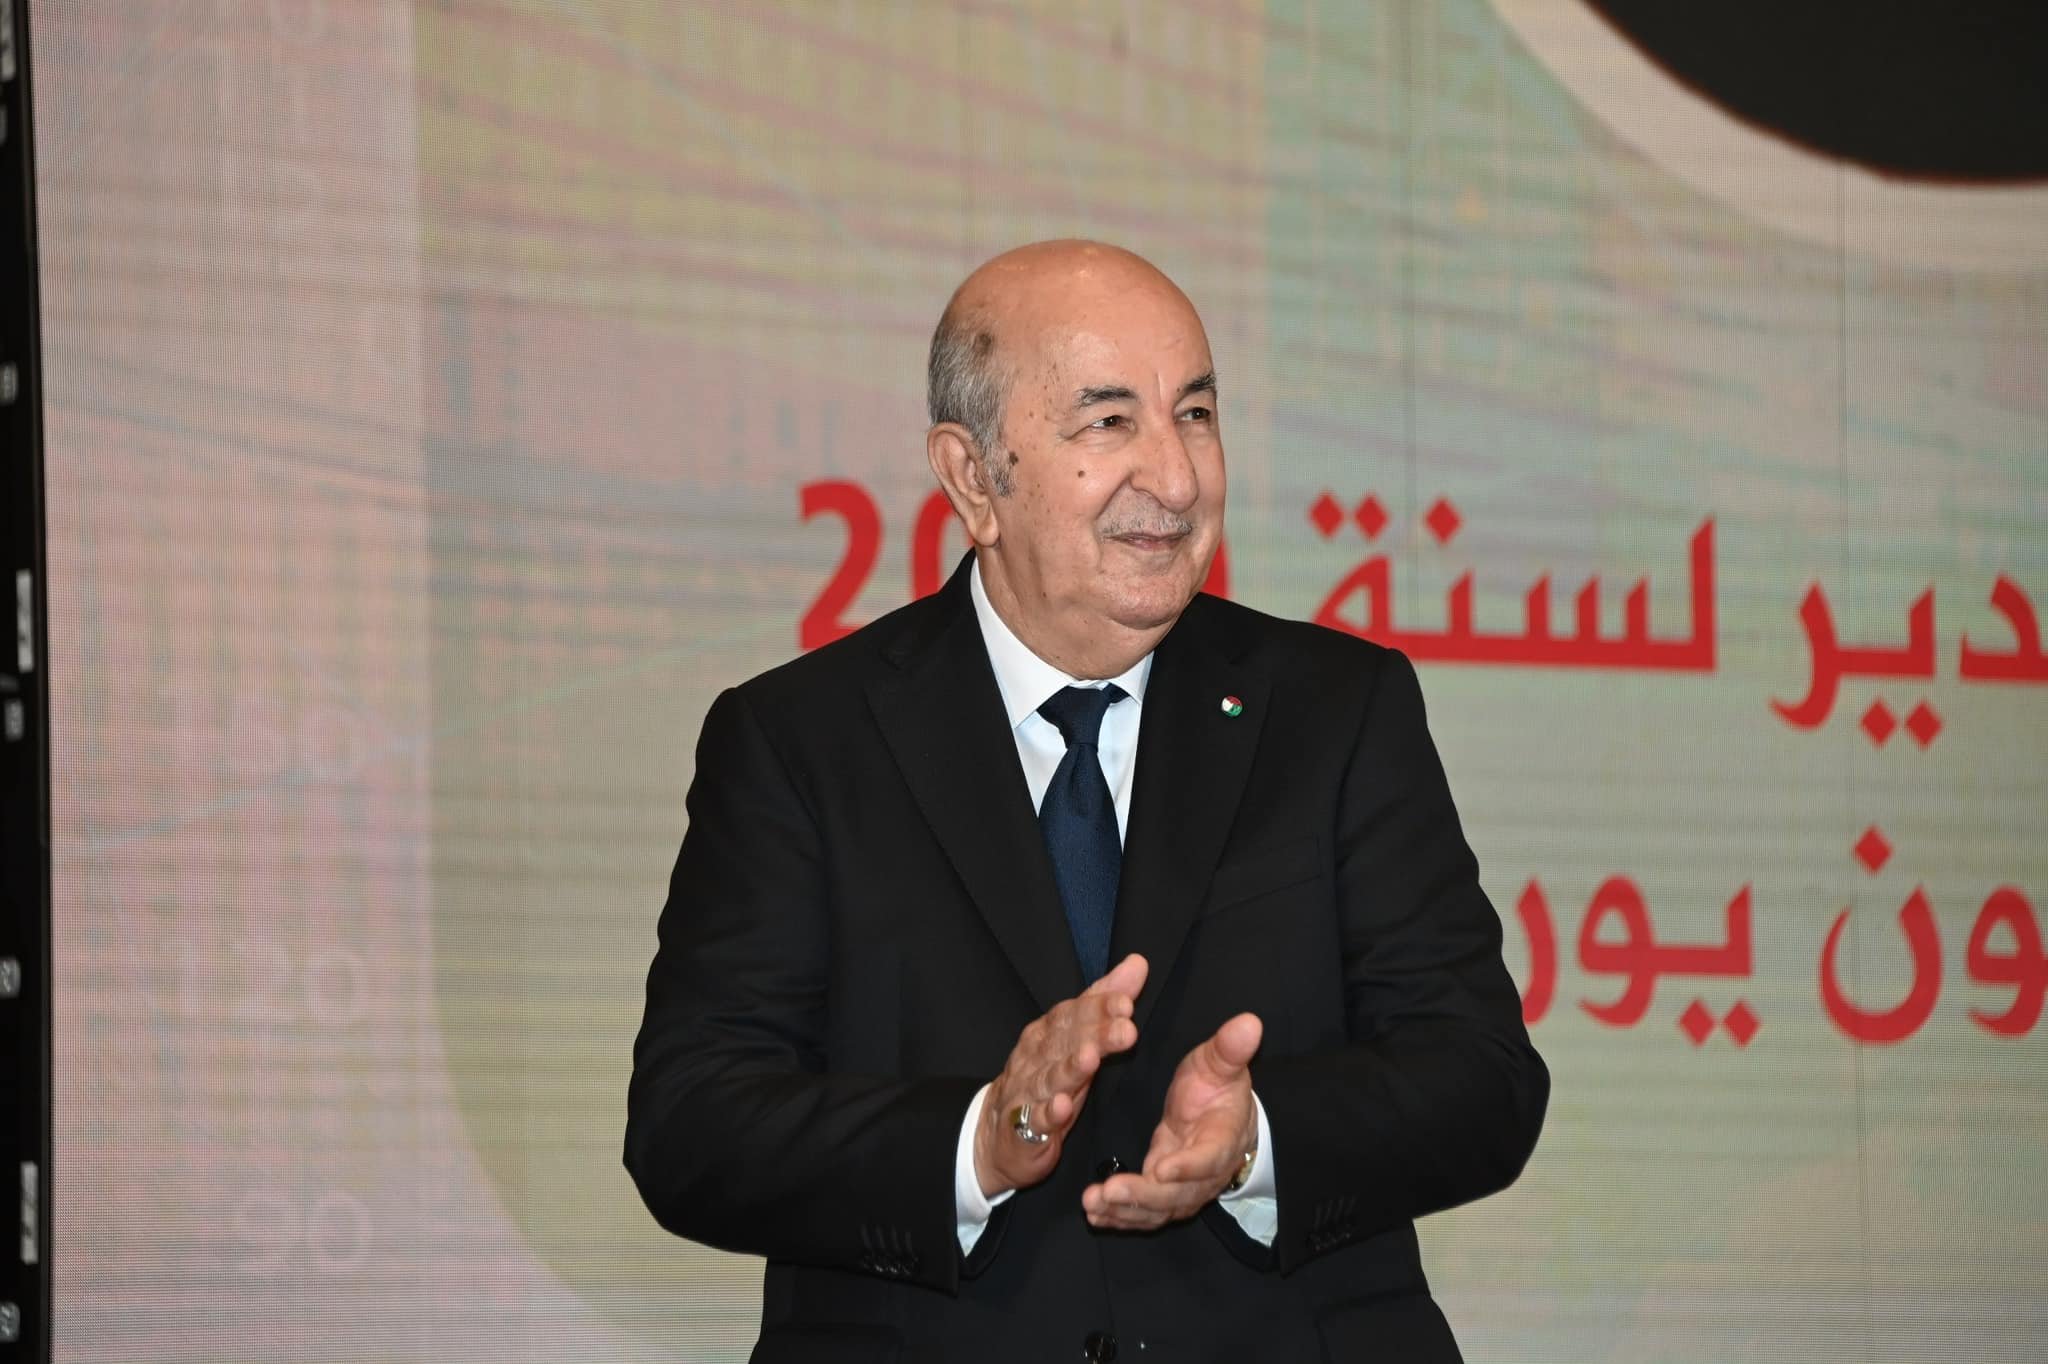 رئيس الجمهورية يهنئ الجزائريين بحلول السنة الهجرية الجديدة